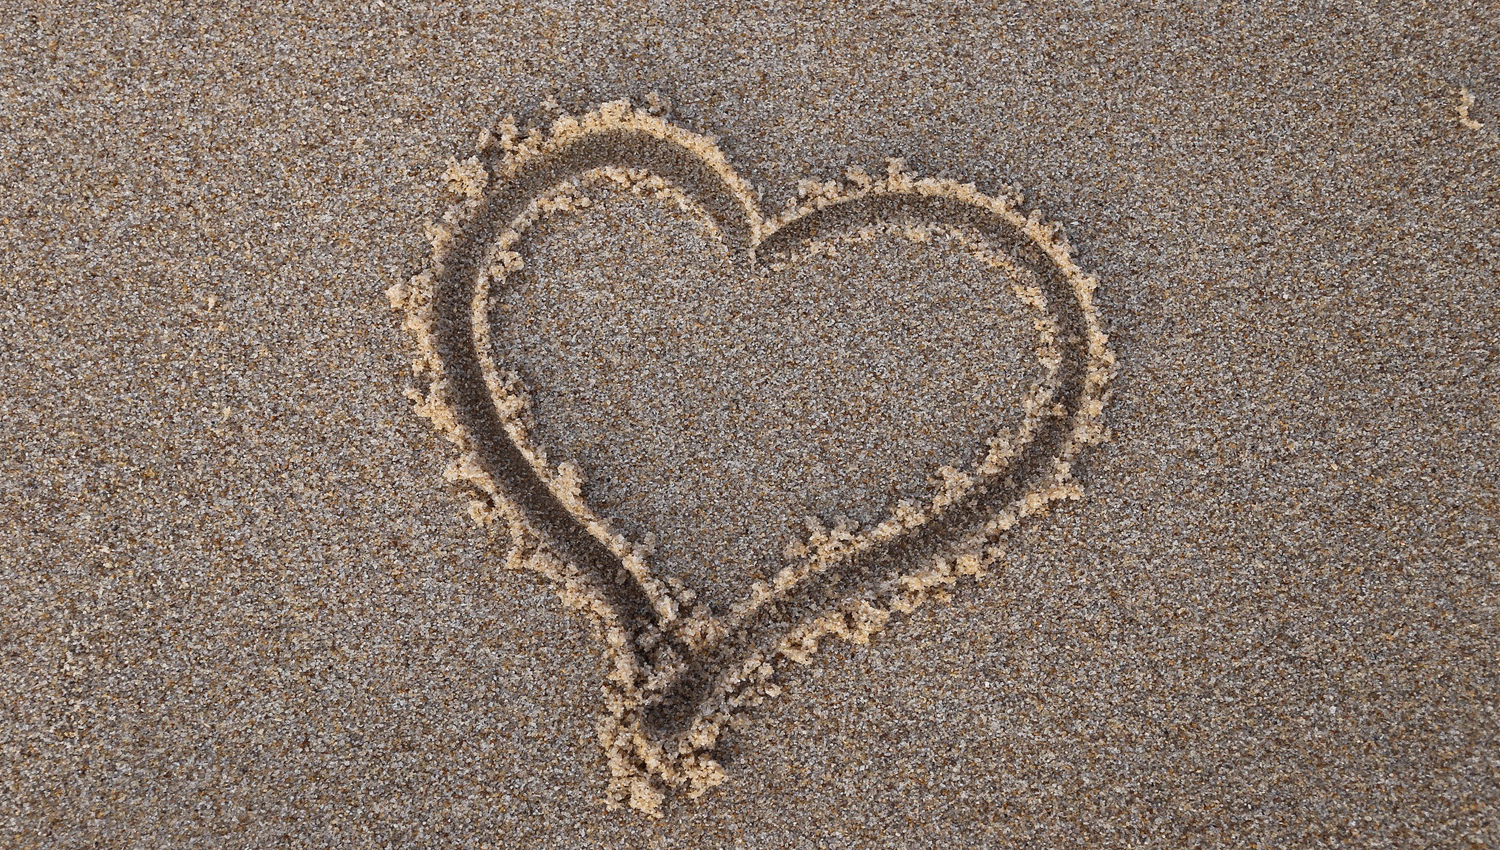 אהבה - תמונה של לב מצויר בחול על שפת הים